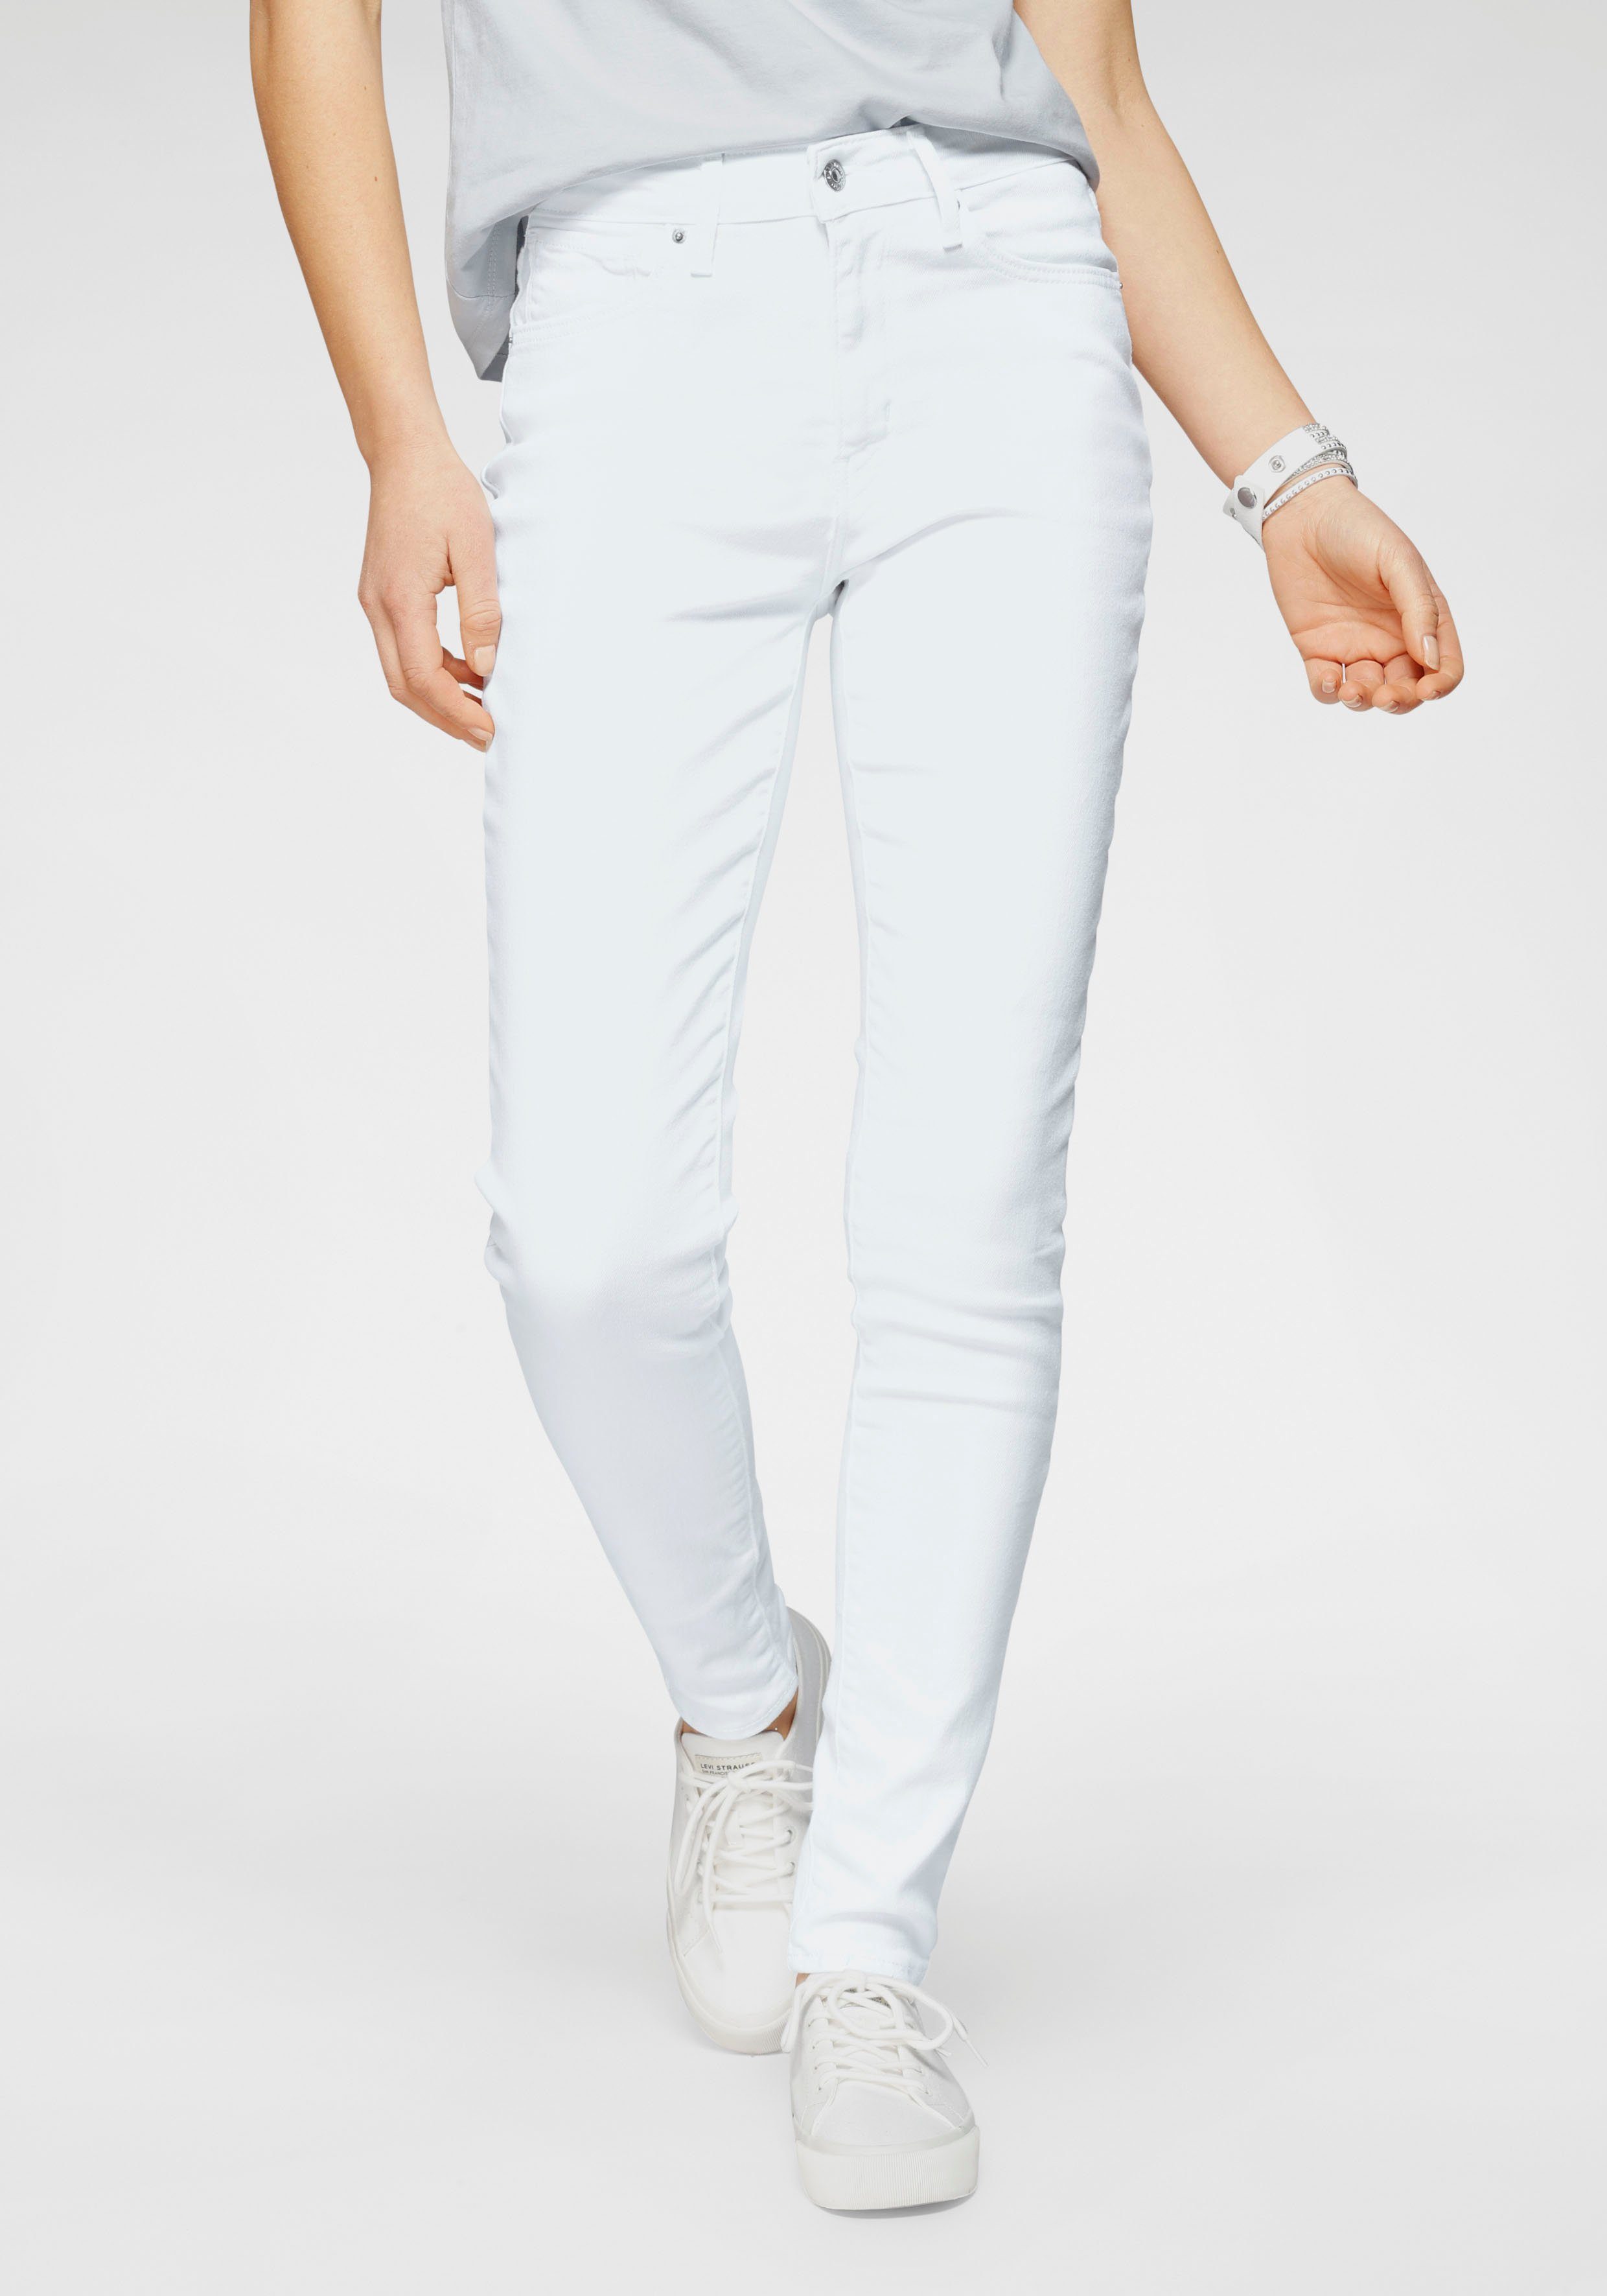 Weiße Jeans online kaufen | OTTO